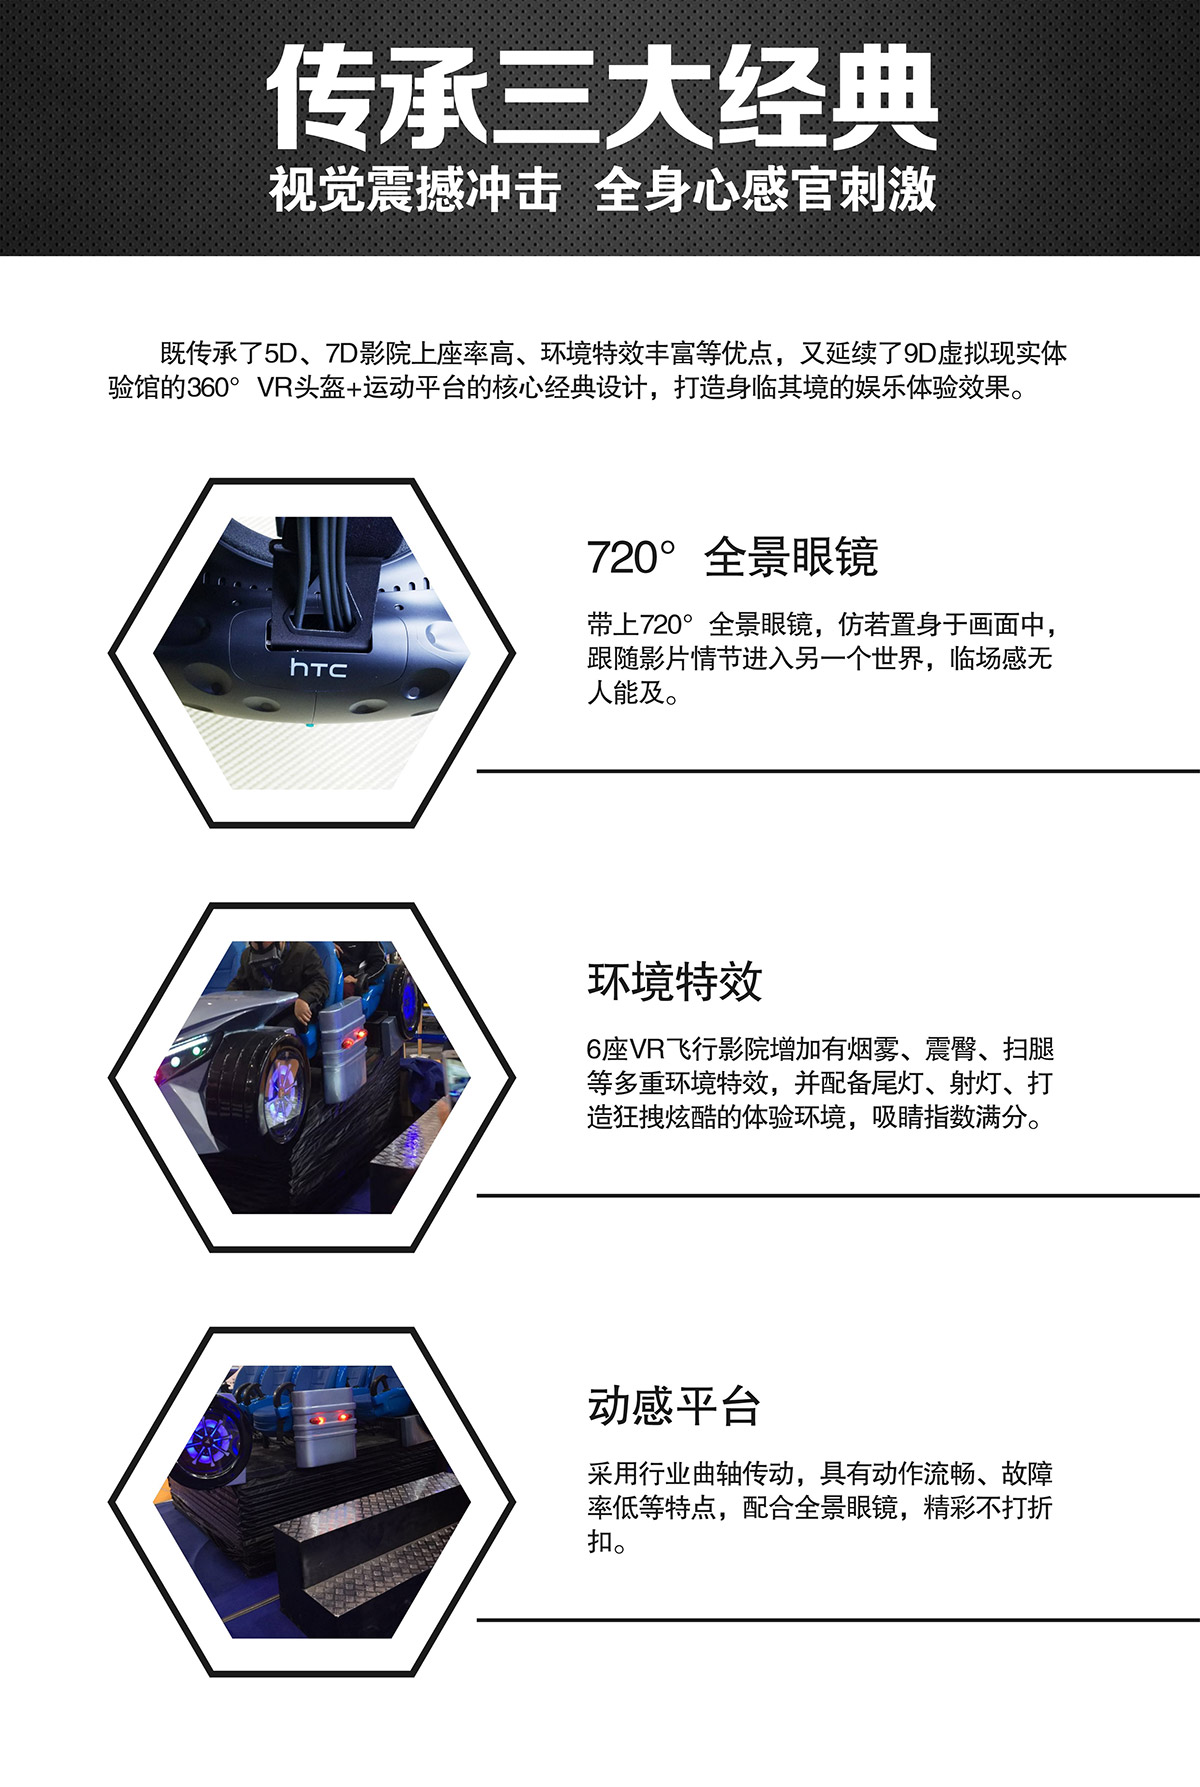 奇影幻境VR虚拟飞行体验馆视觉震撼冲击.jpg